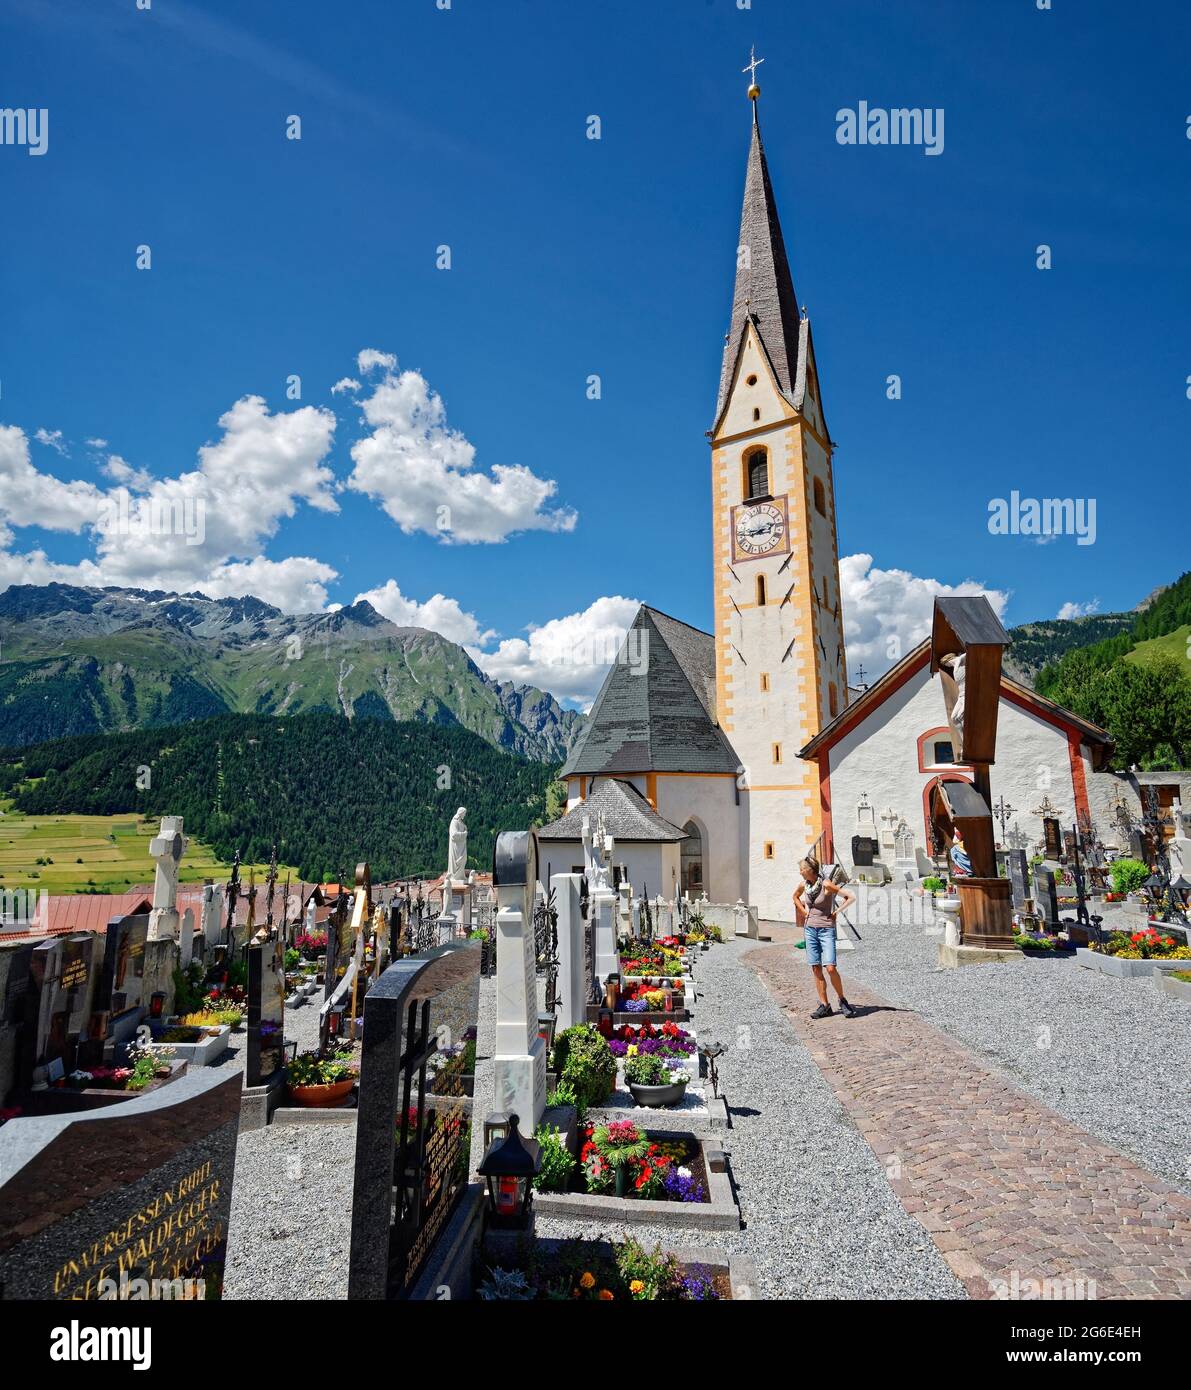 Église paroissiale de Saint-Valentin, Nauders, Tyrol, Autriche Banque D'Images